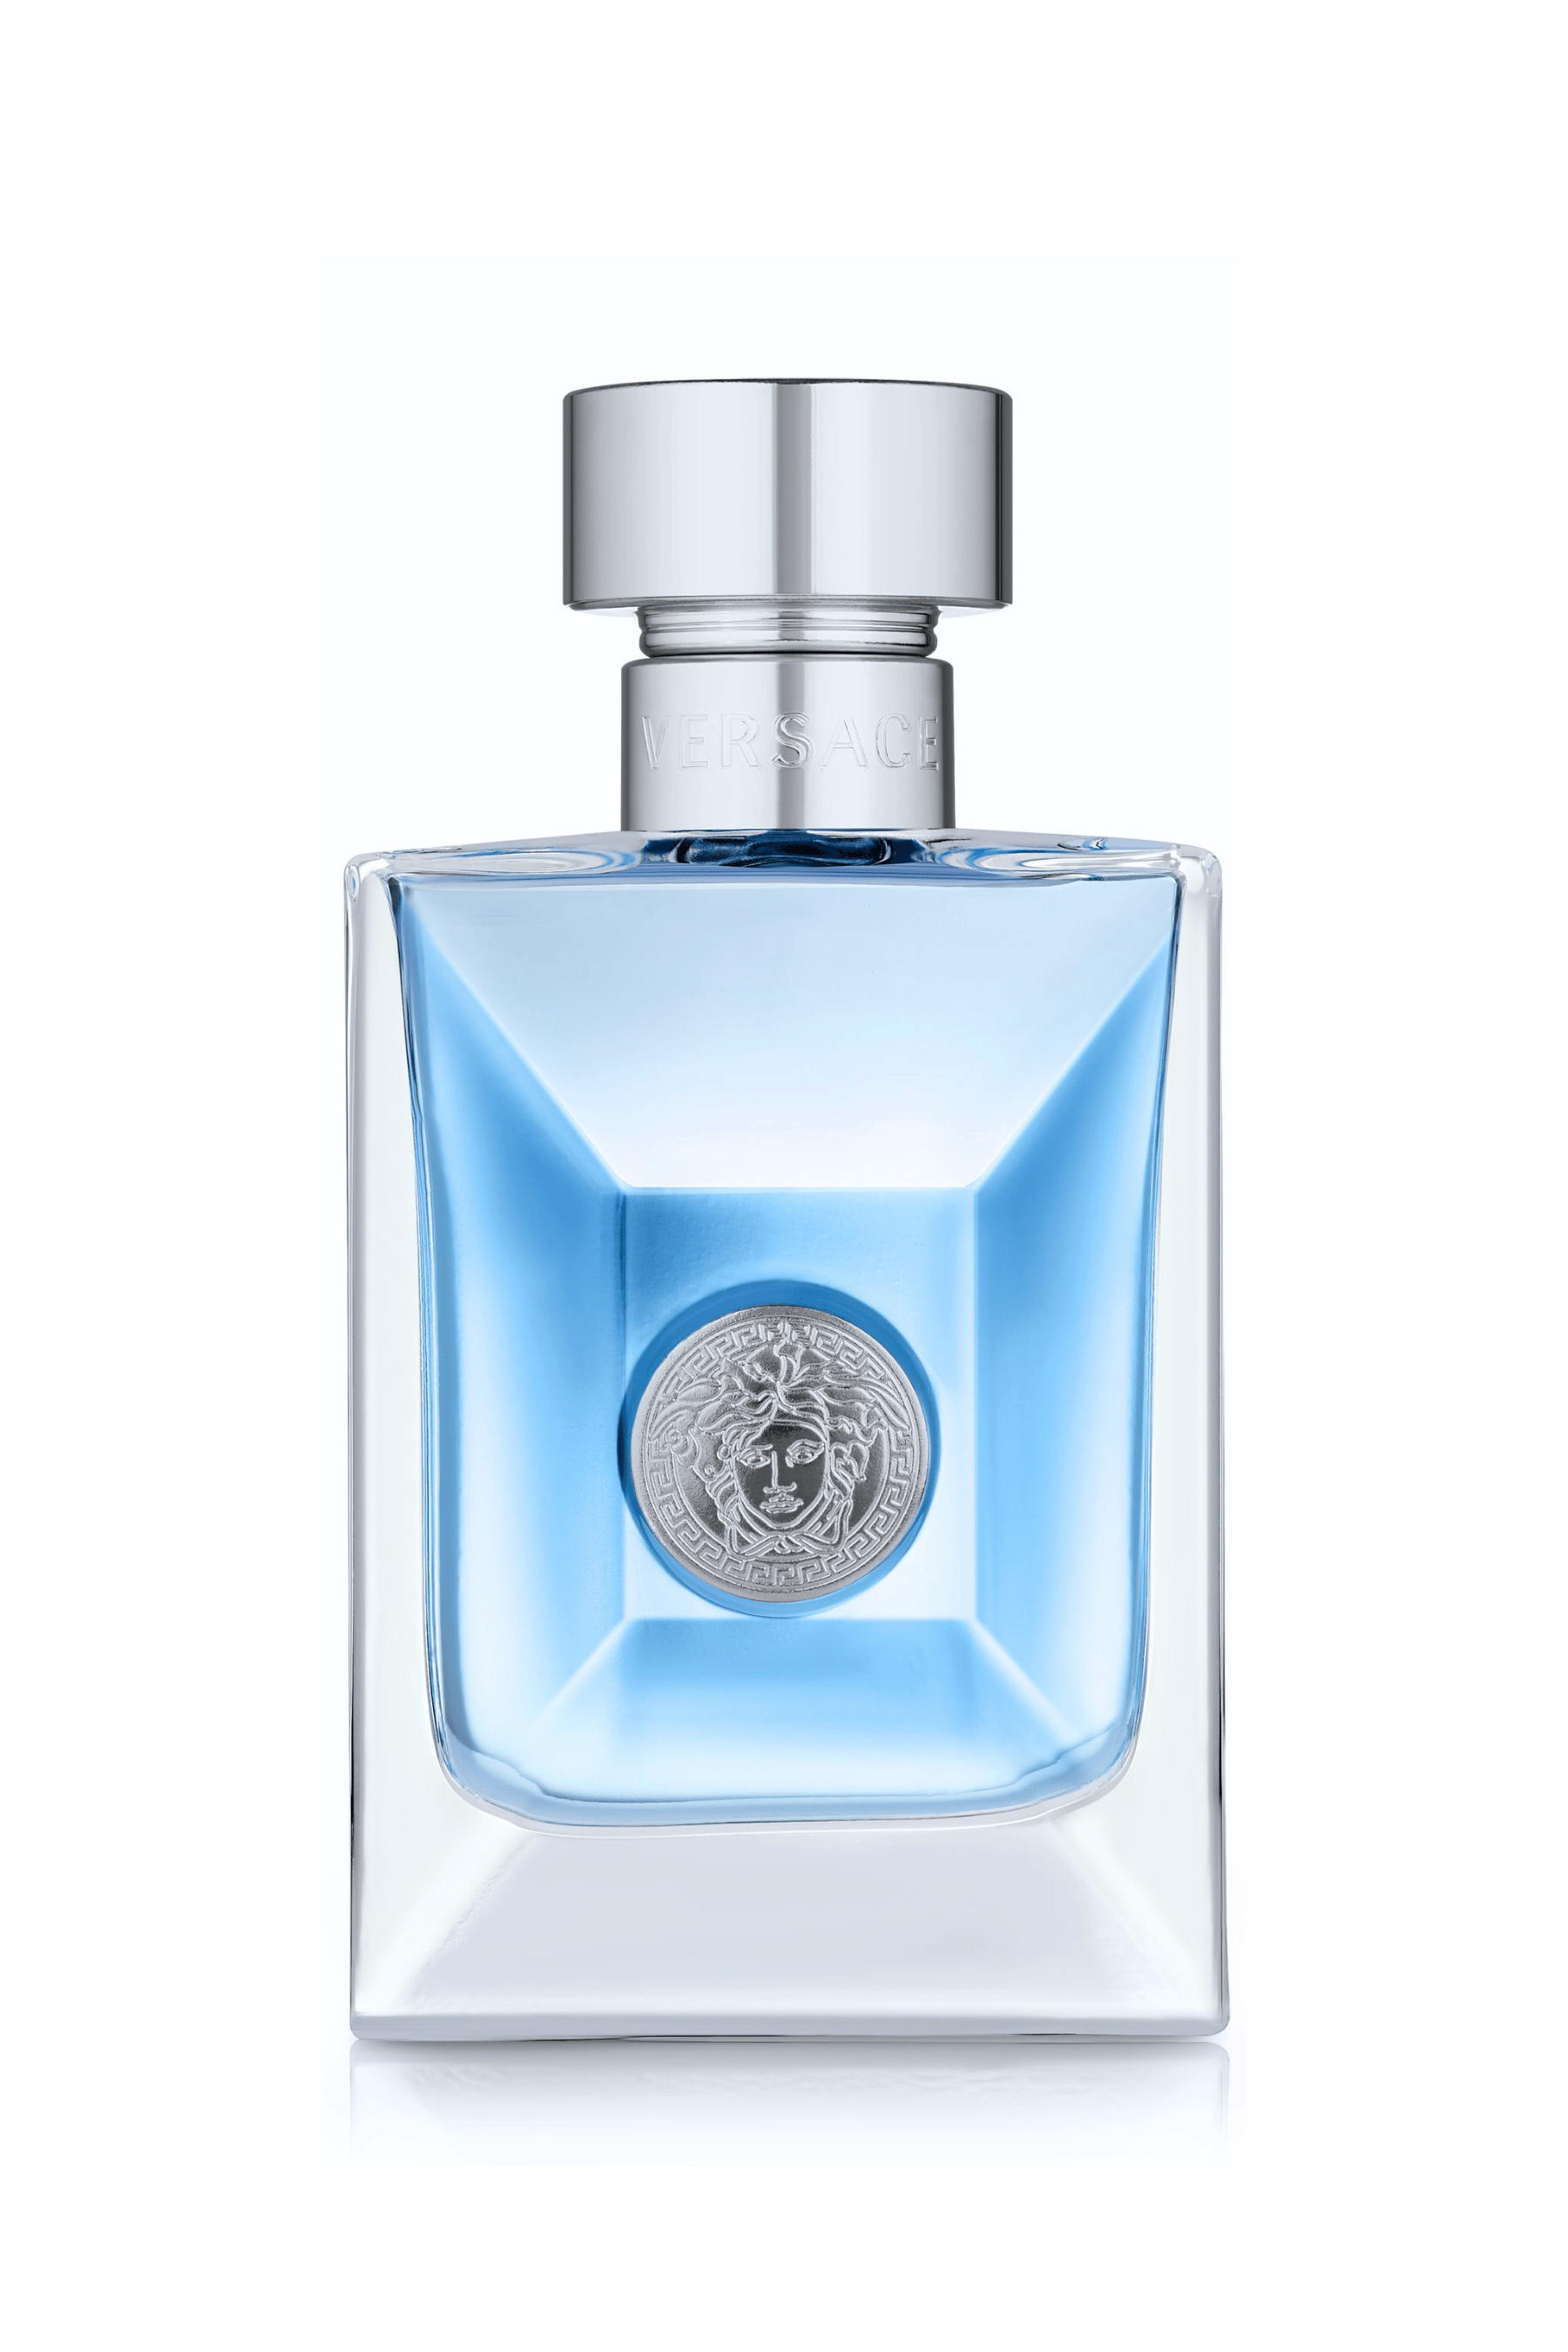 Chanel Bleu de Eau de Parfum Spray for Men, 1.7 Ounce Wood 1.7 Fl